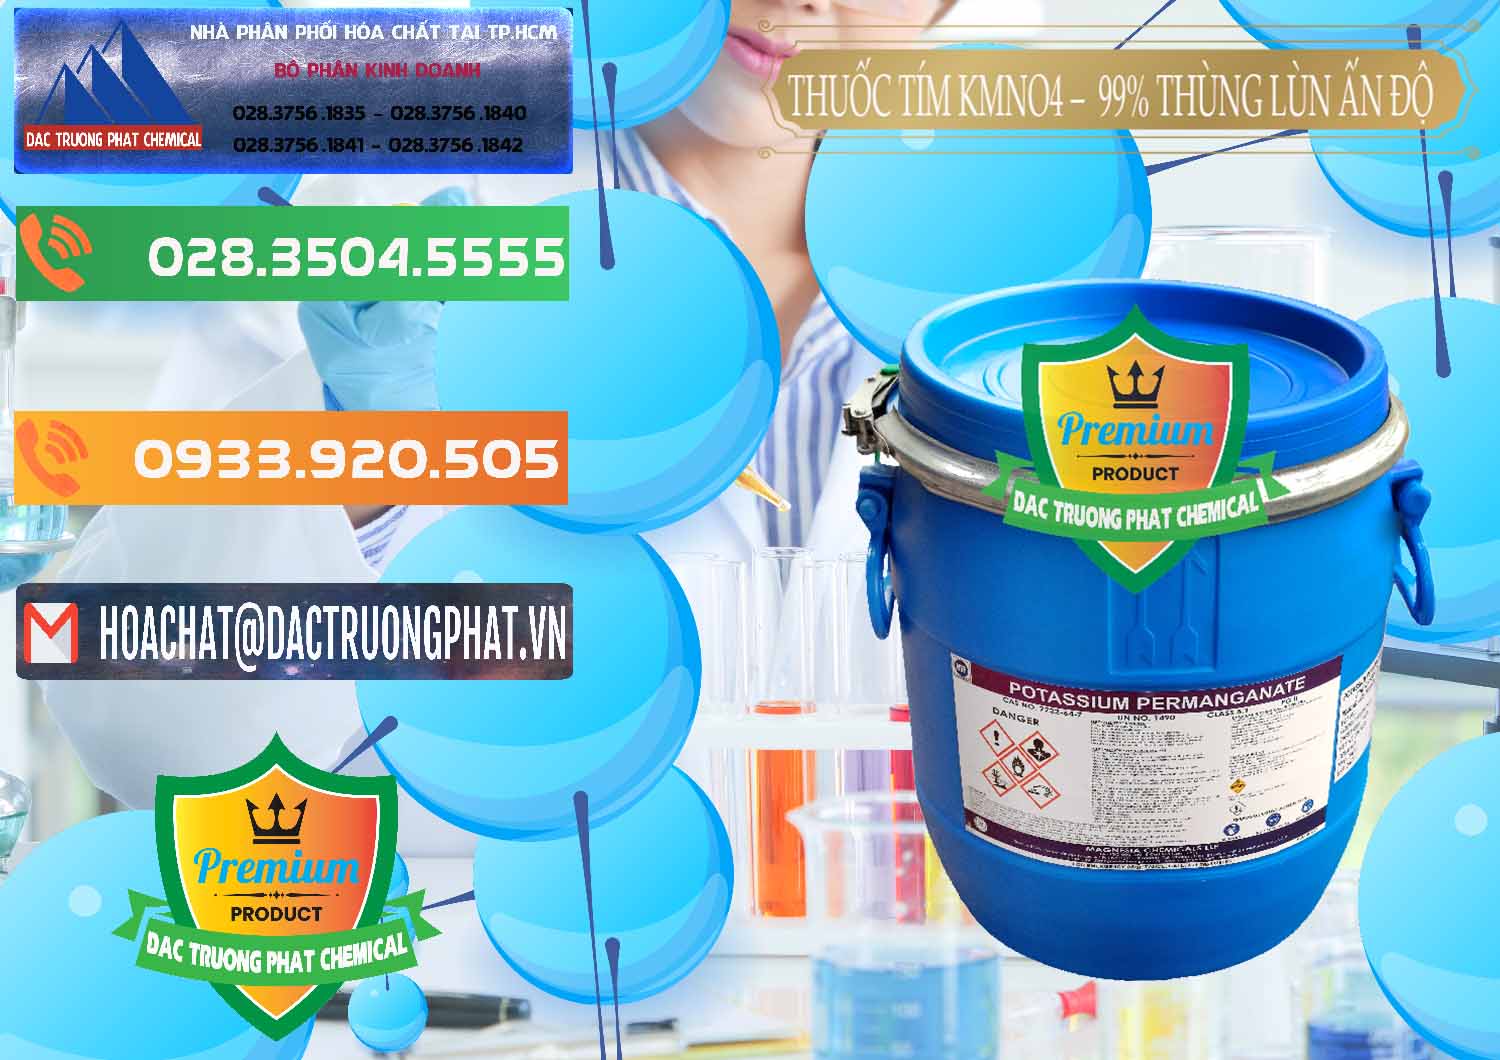 Cty bán và phân phối Thuốc Tím - KMNO4 Thùng Lùn 99% Magnesia Chemicals Ấn Độ India - 0165 - Nơi phân phối & nhập khẩu hóa chất tại TP.HCM - hoachatxulynuoc.com.vn